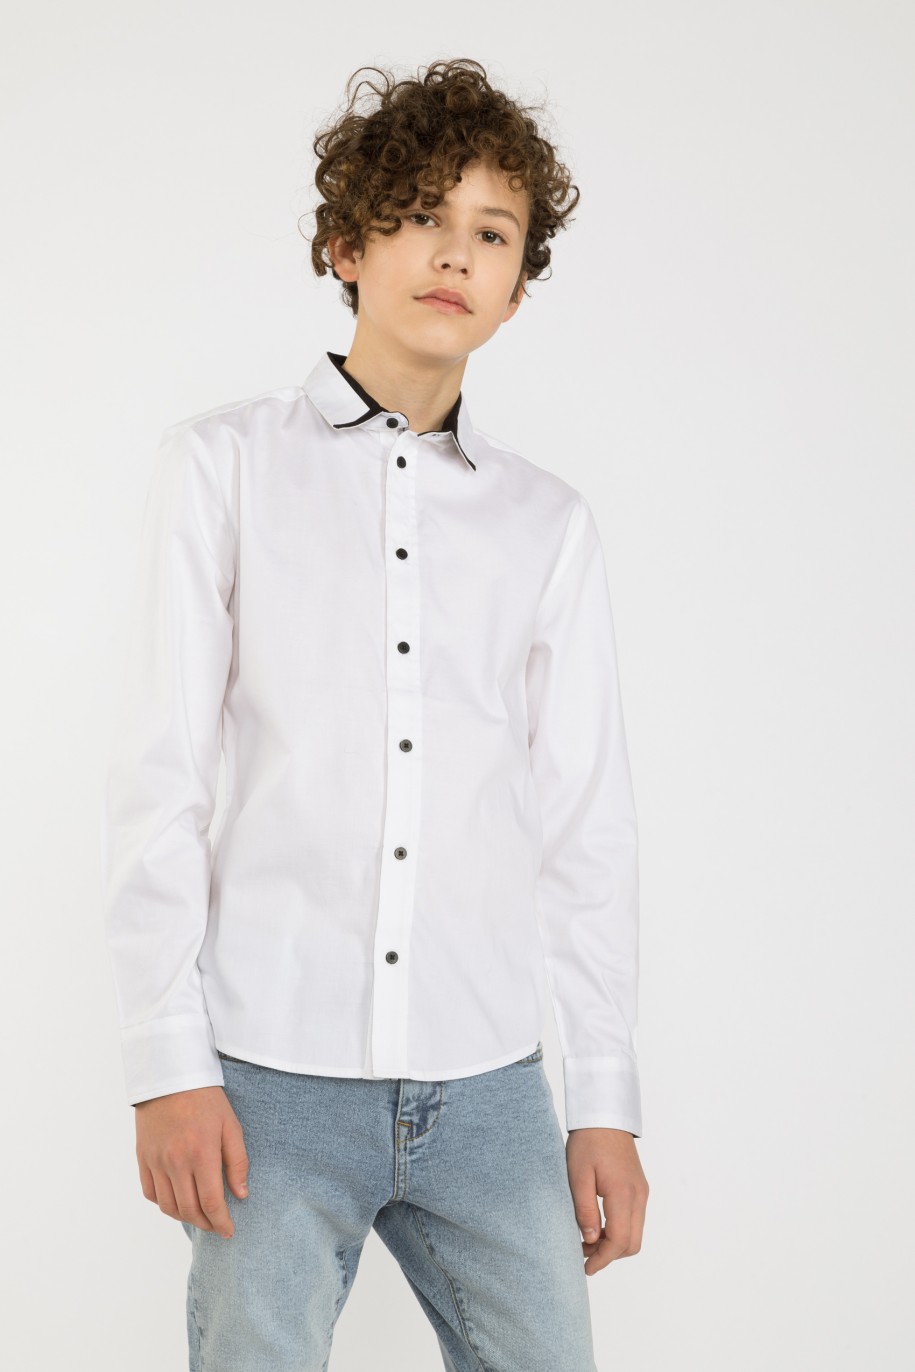 Biała elegancka koszula dla chłopaka - 32680